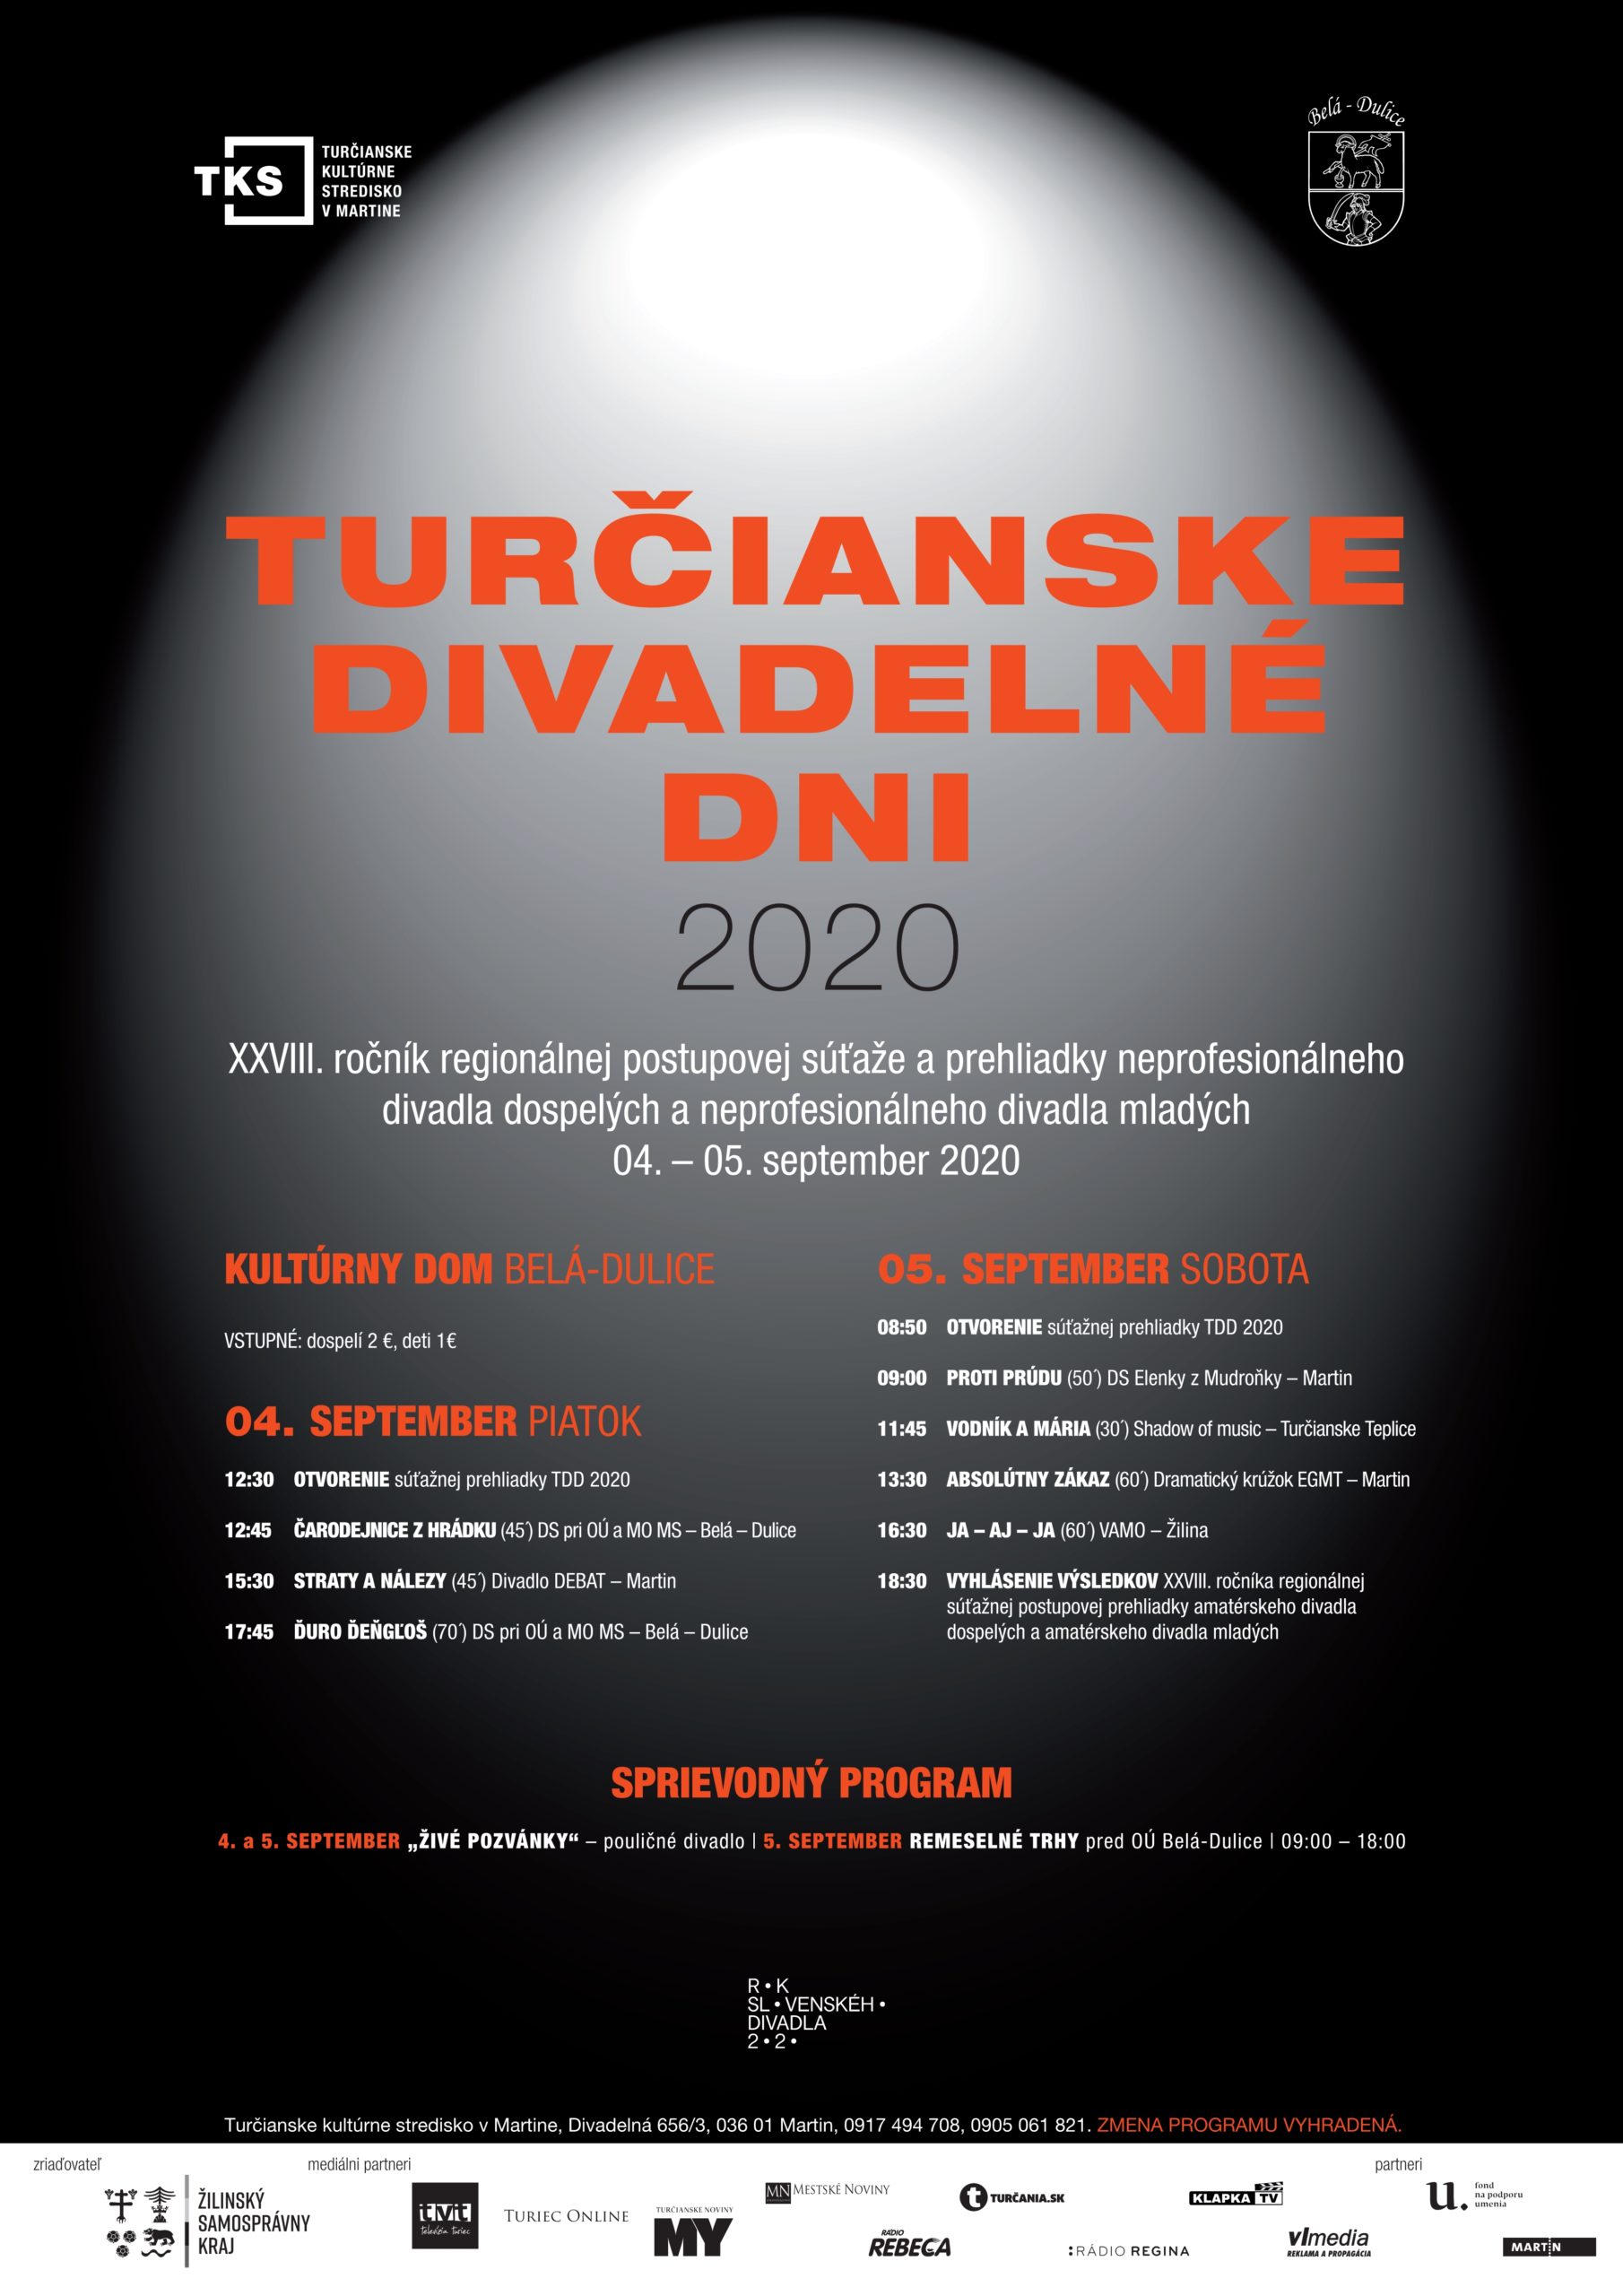 Turčianske divadelné dni 2020 – výsledky regionálneho kola súťažnej prehliadky